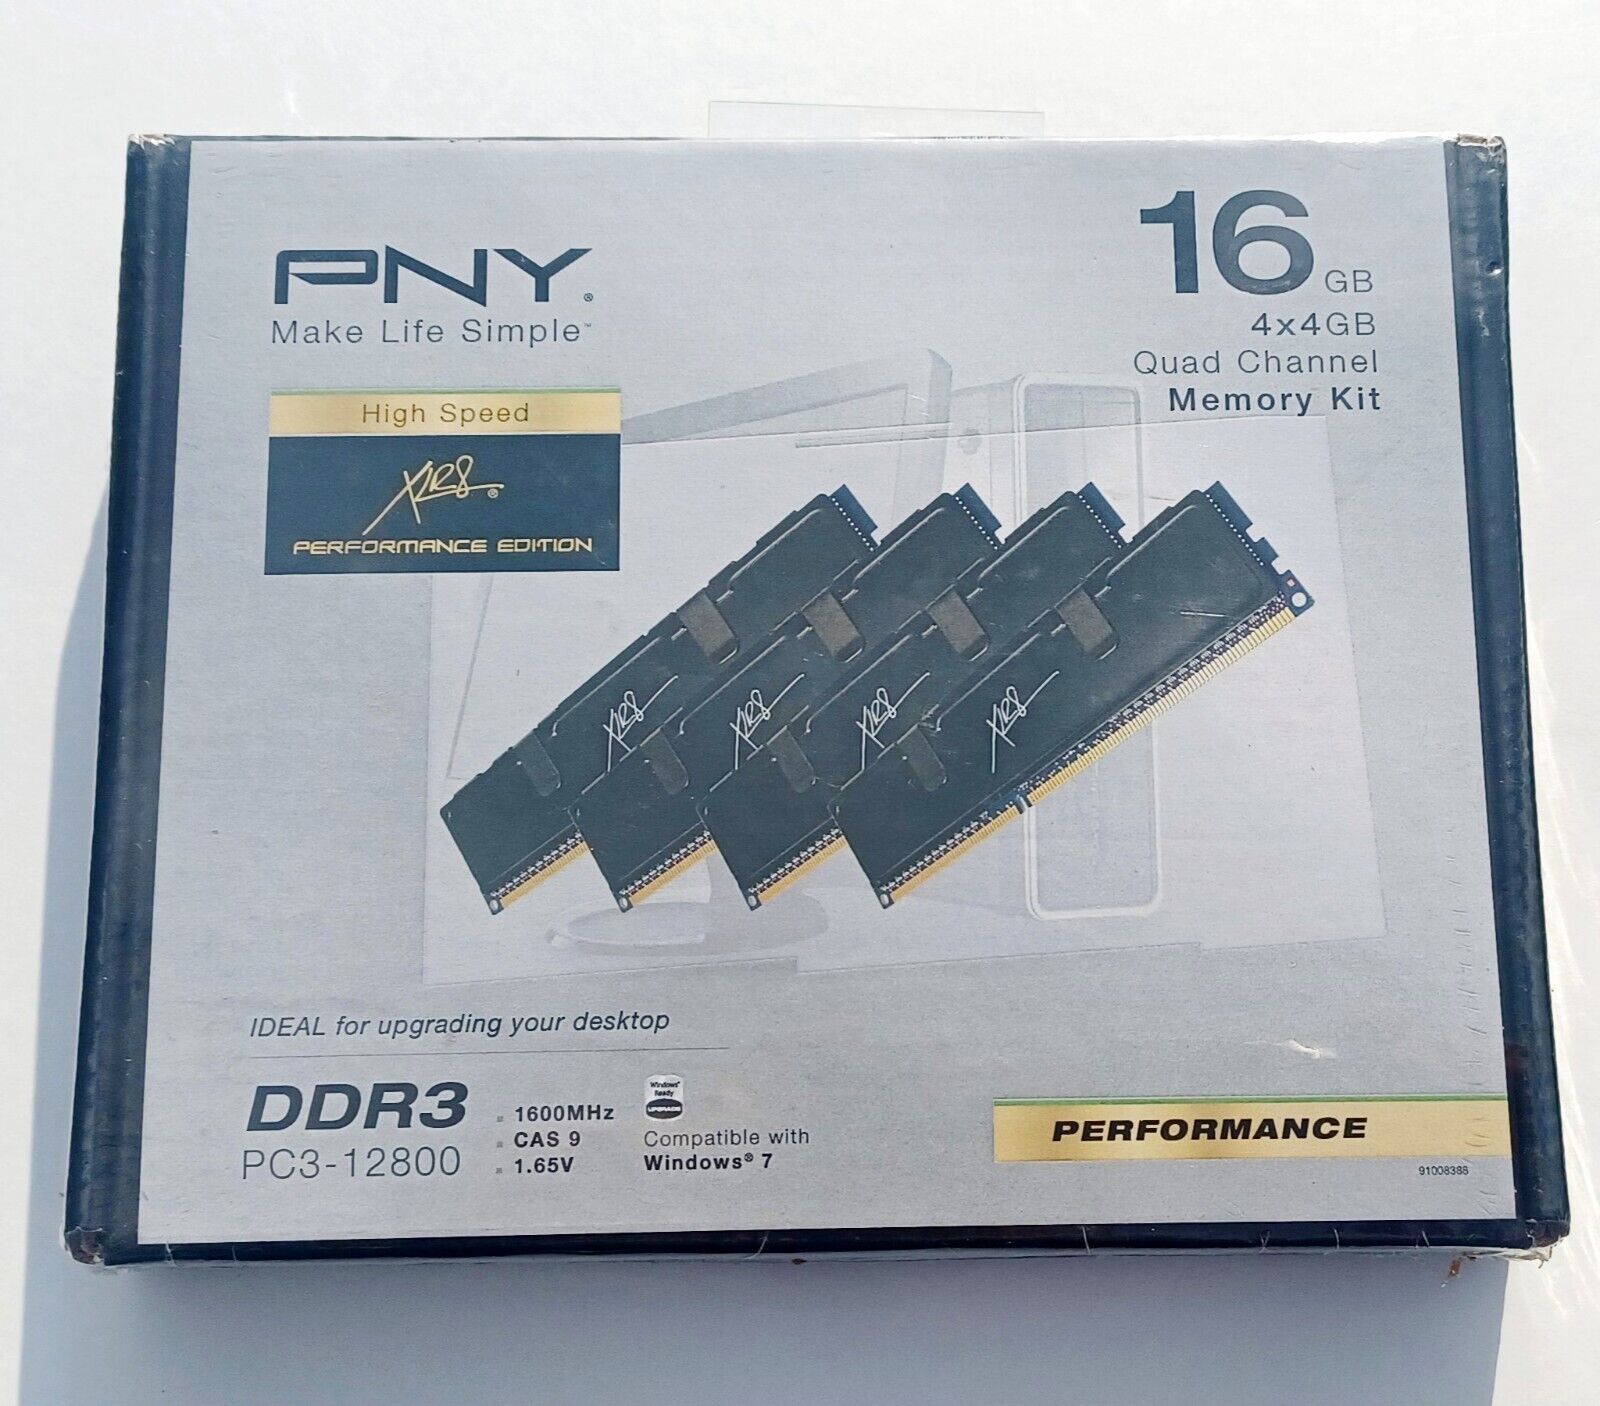 PNY TECHNOLOGIES 16GB (4×4GB) QUAD CHANNEL MEMORY KIT MD16384K4D3-1600-X9